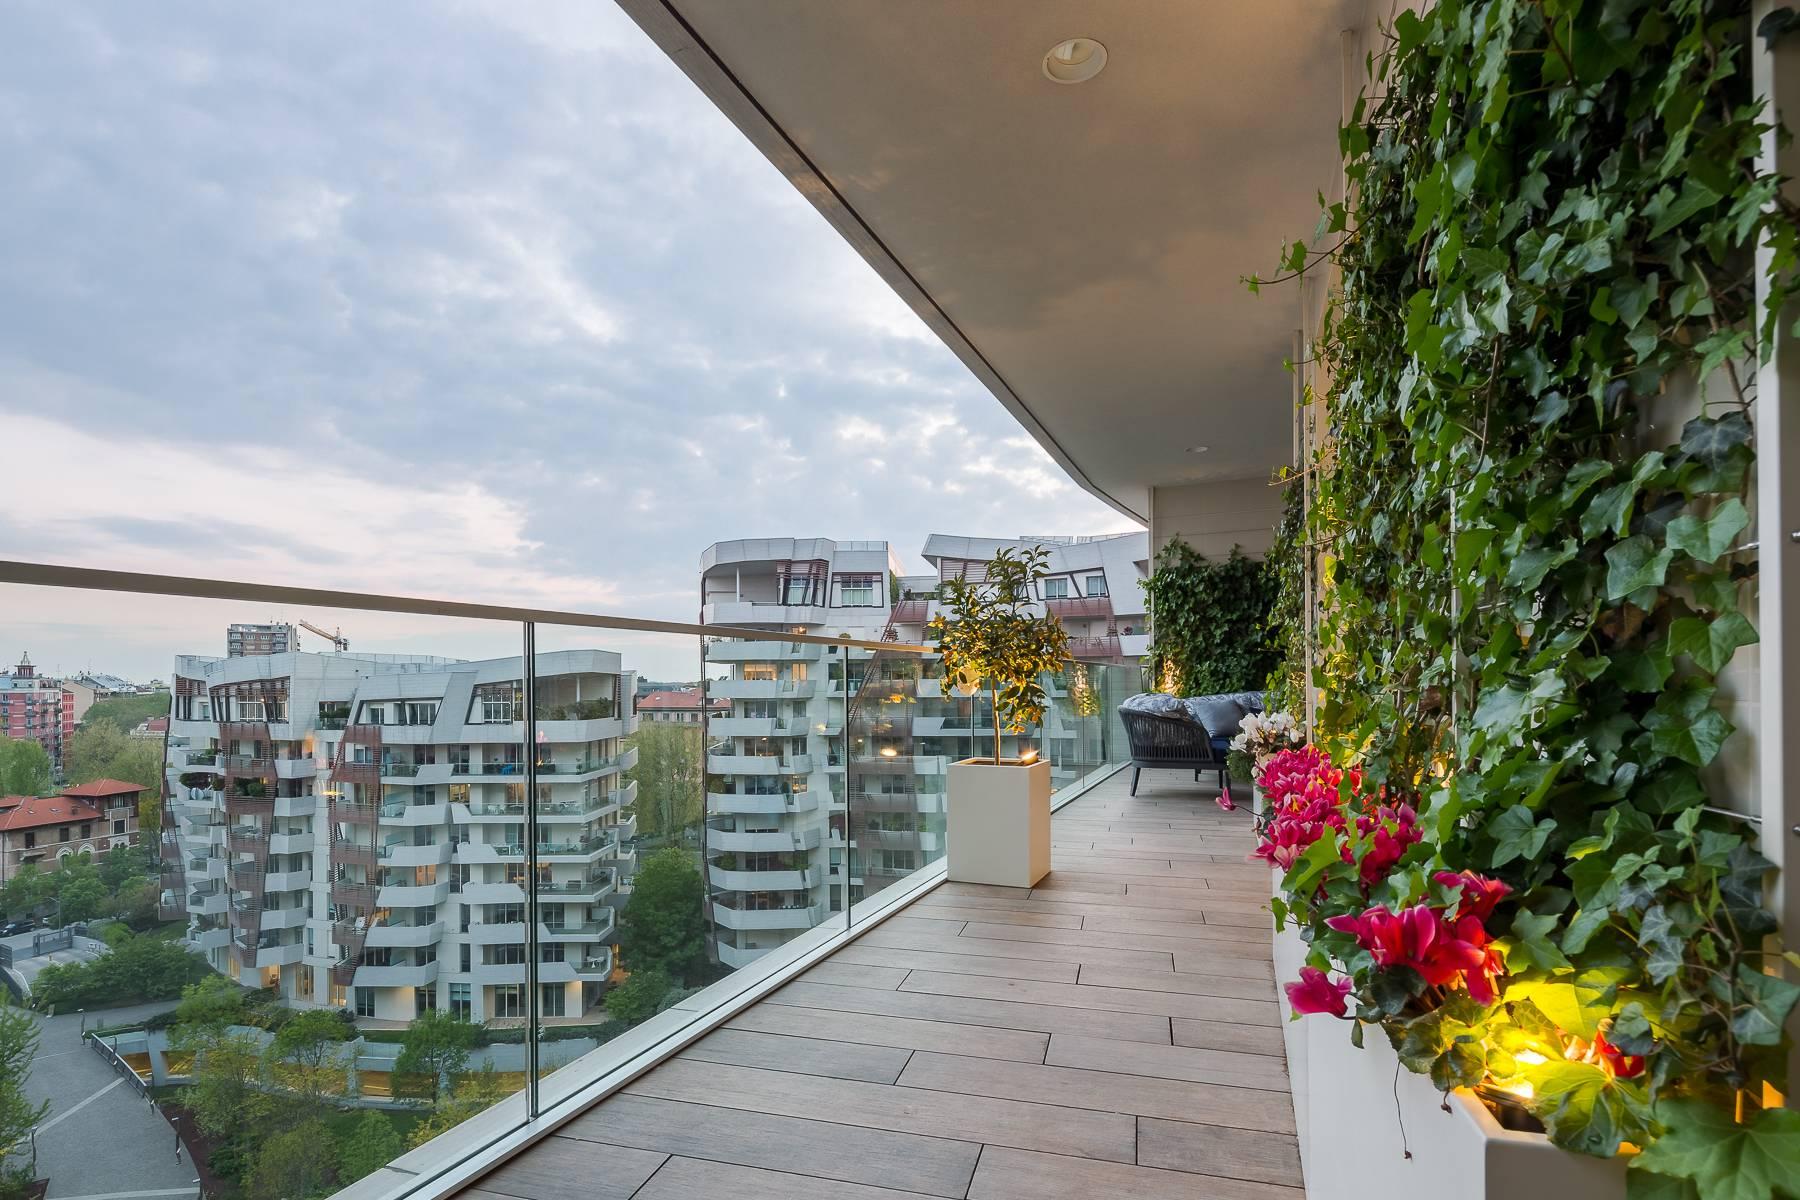 Wunderschöne möblierte Design-Wohnung mit Terrassen im CitylIfe Stadtviertel - 34